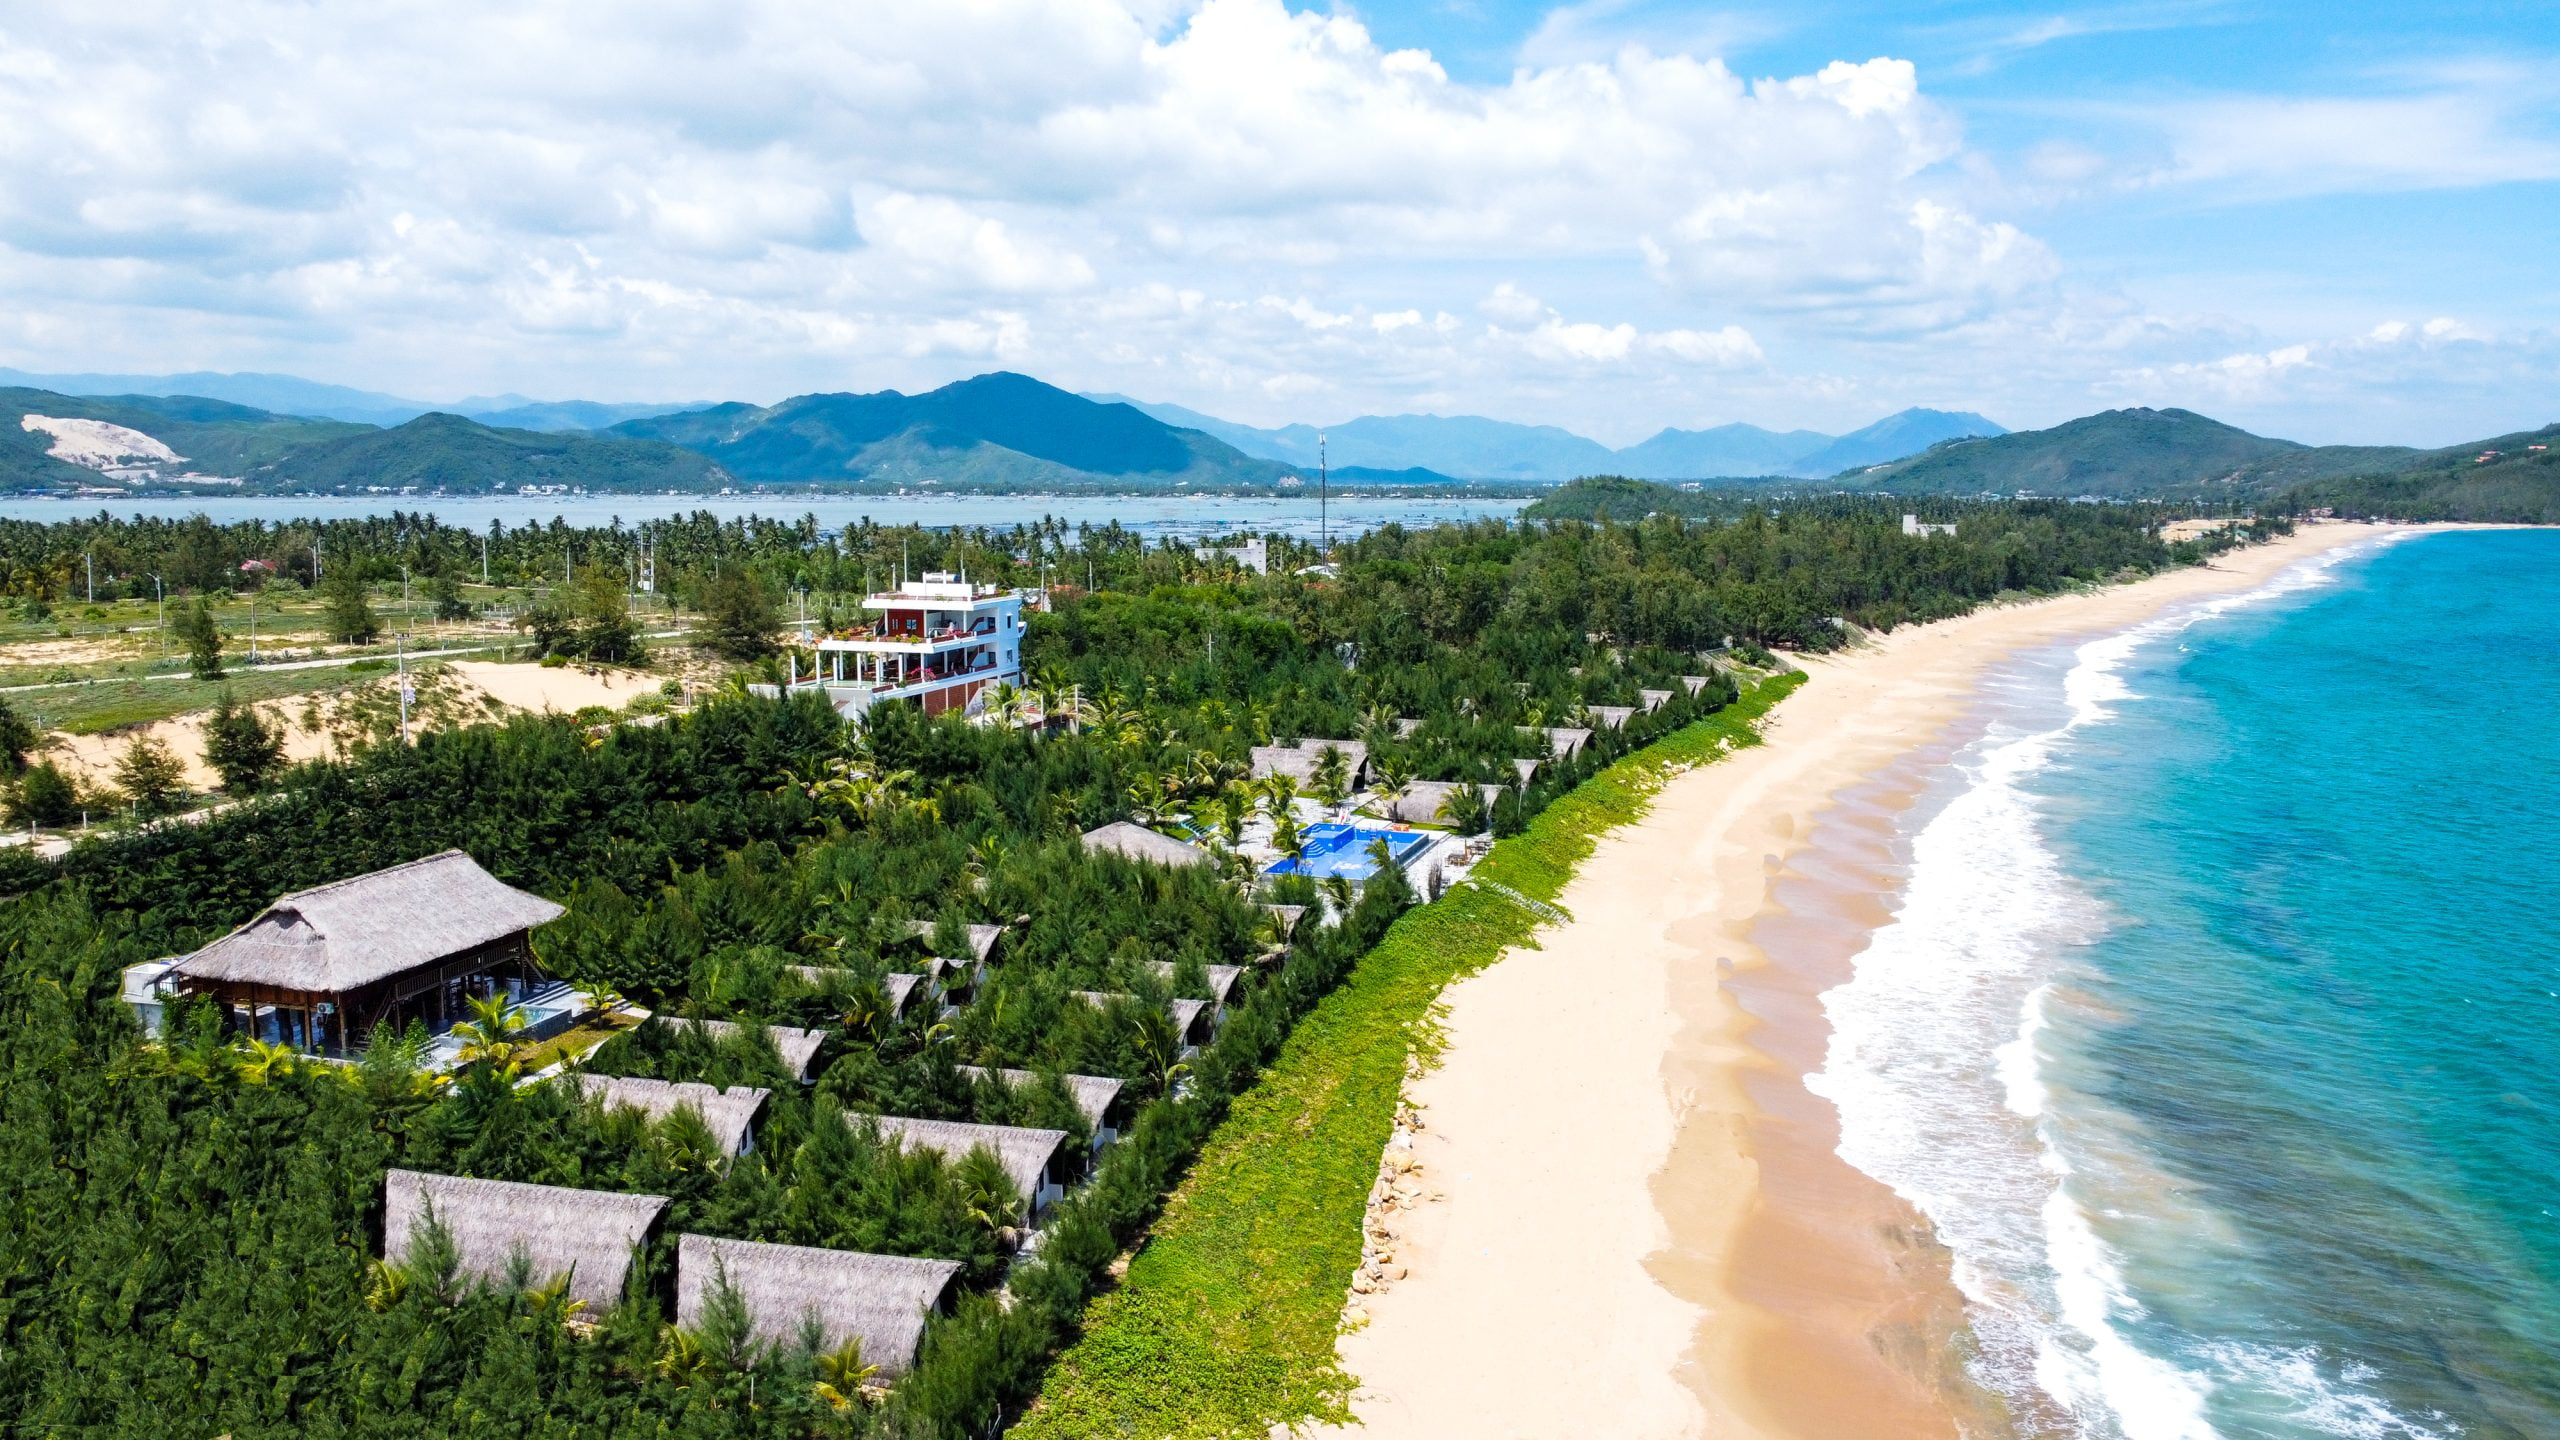 Hoa Loi resort Phu yen